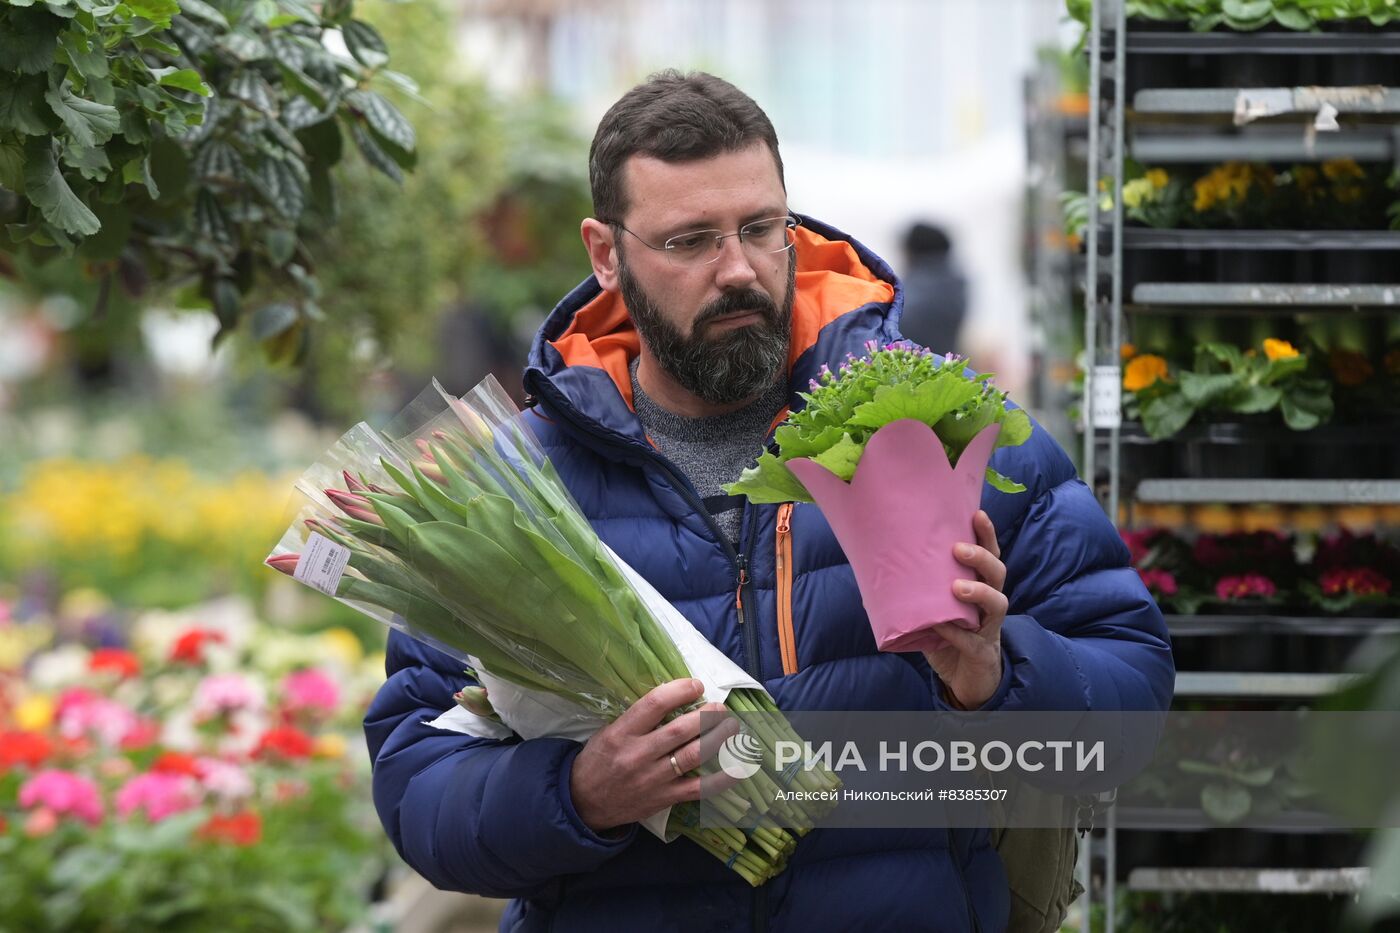 Продажа цветов к 8 марта в Московской области